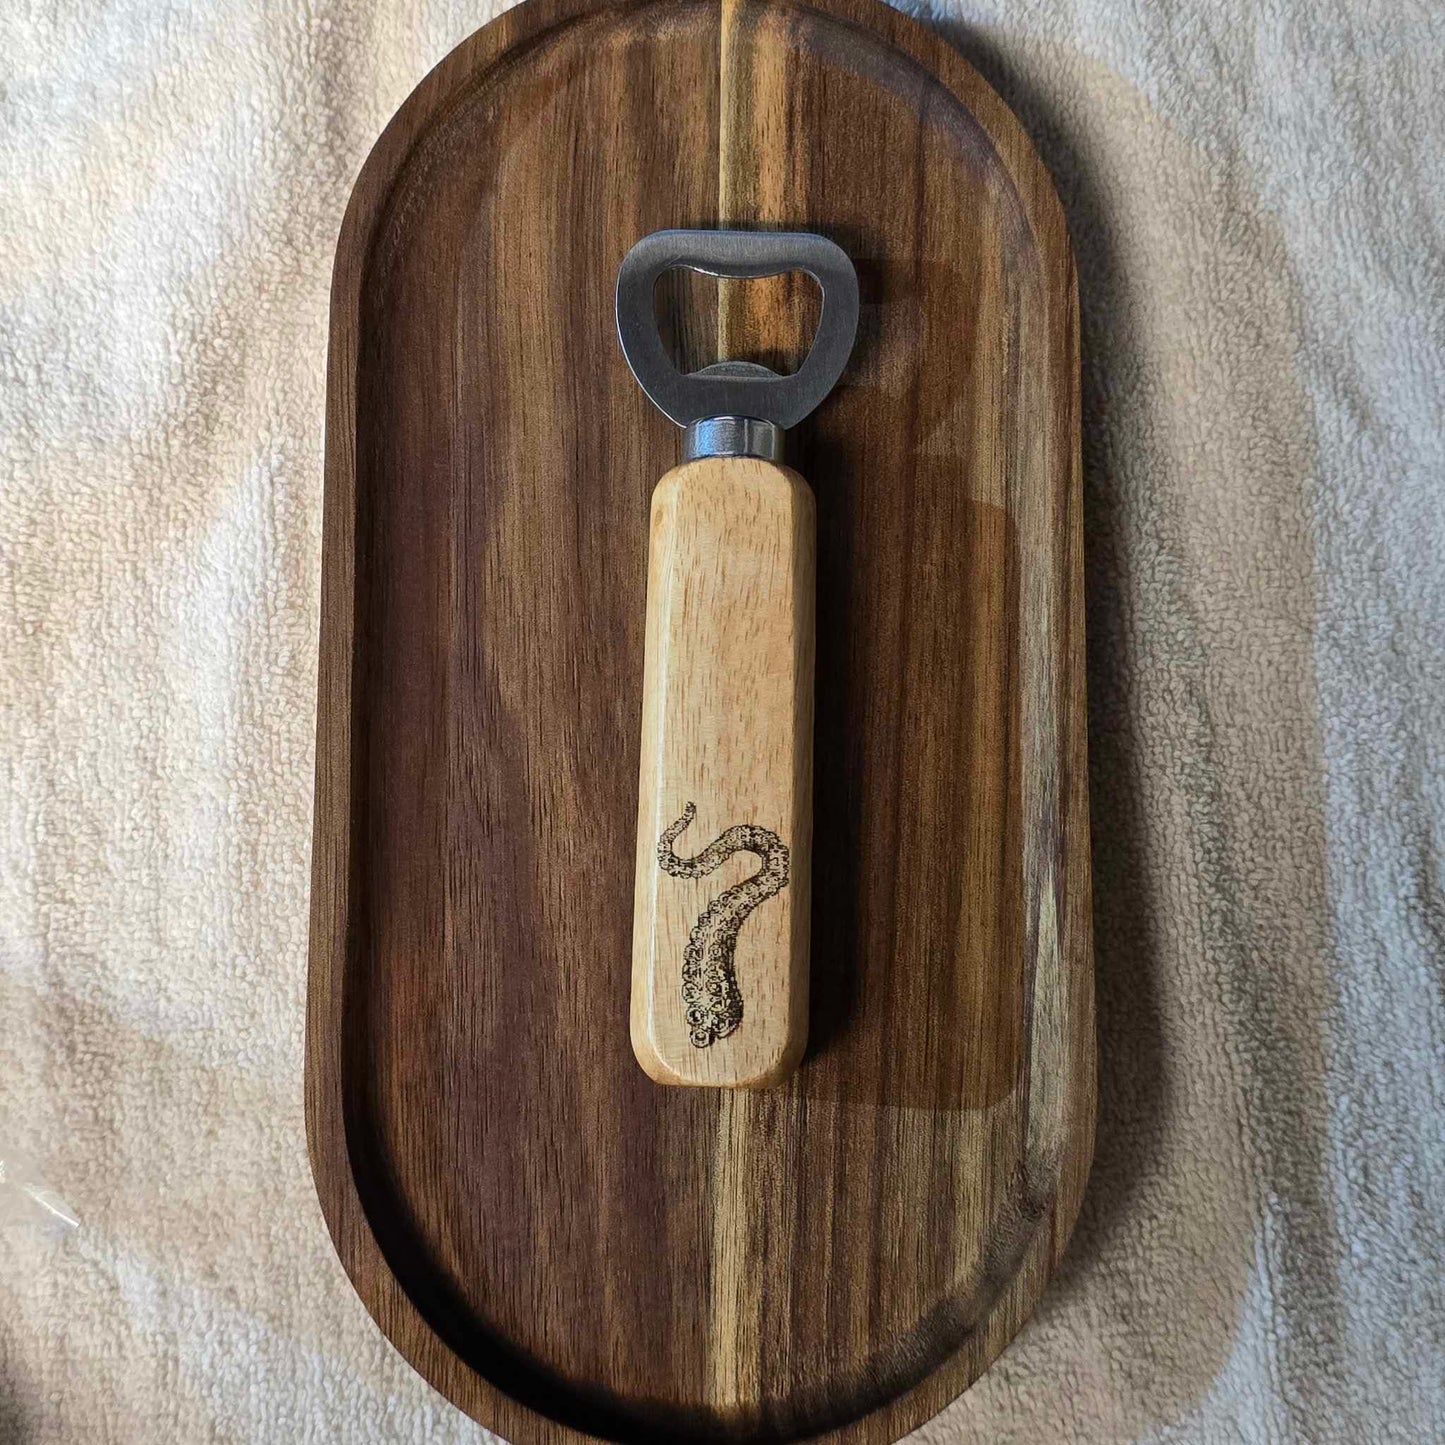 Hardwood bottle openers